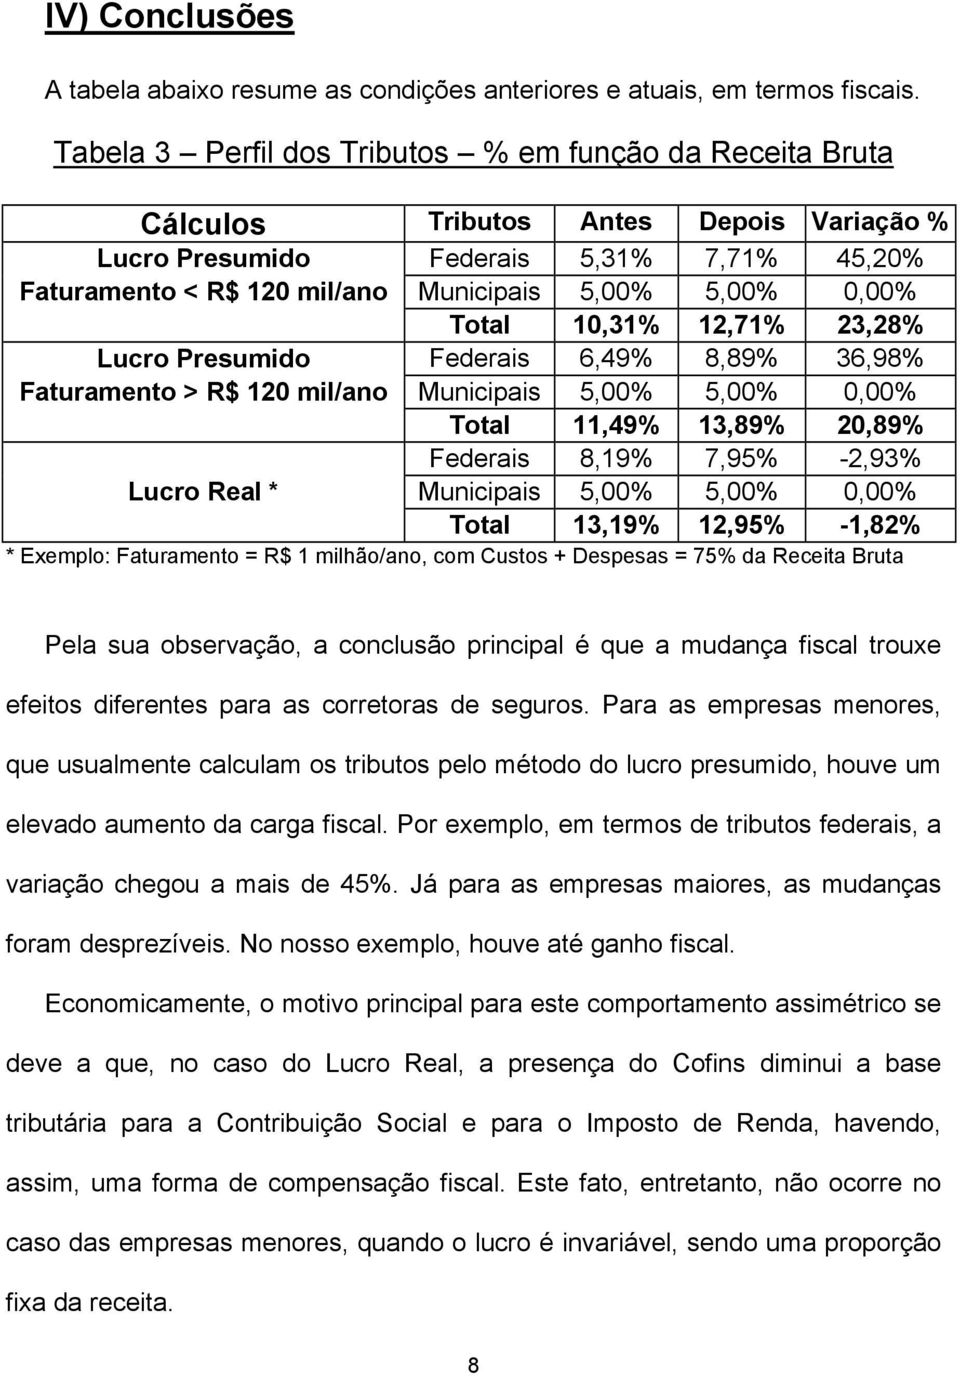 0,00% Total 10,31% 12,71% 23,28% Lucro Presumido Federais 6,49% 8,89% 36,98% Faturamento > R$ 120 mil/ano Municipais 5,00% 5,00% 0,00% Total 11,49% 13,89% 20,89% Federais 8,19% 7,95% -2,93% Lucro